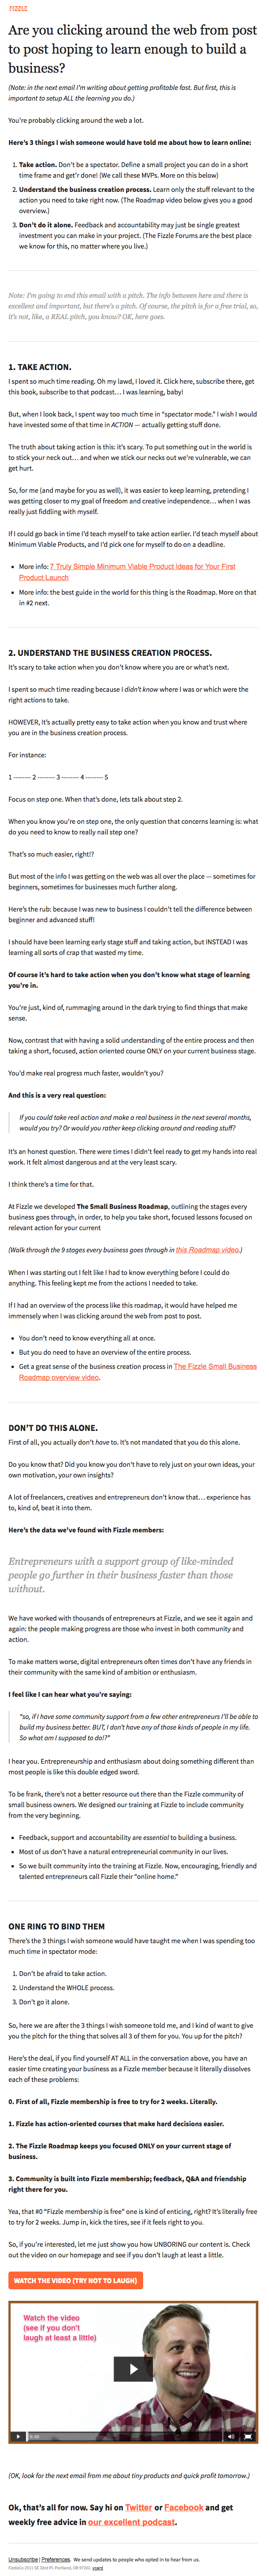 E-newsletter příklad design podnikání s tipy, co Vyšumí